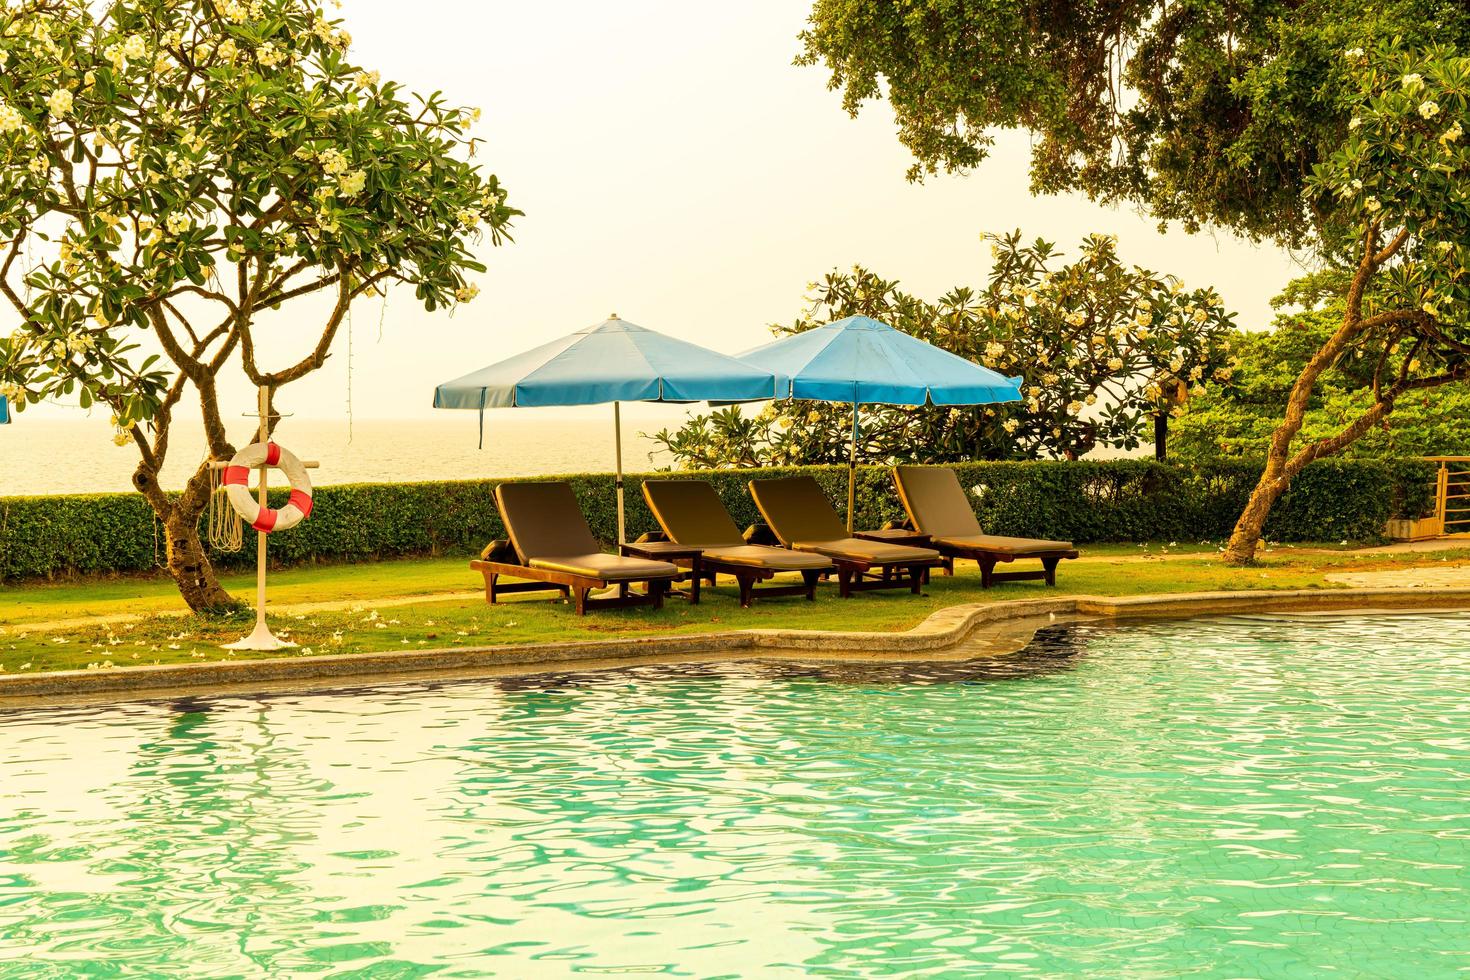 chaises de plage ou lits de piscine avec parasols autour de la piscine au coucher du soleil photo